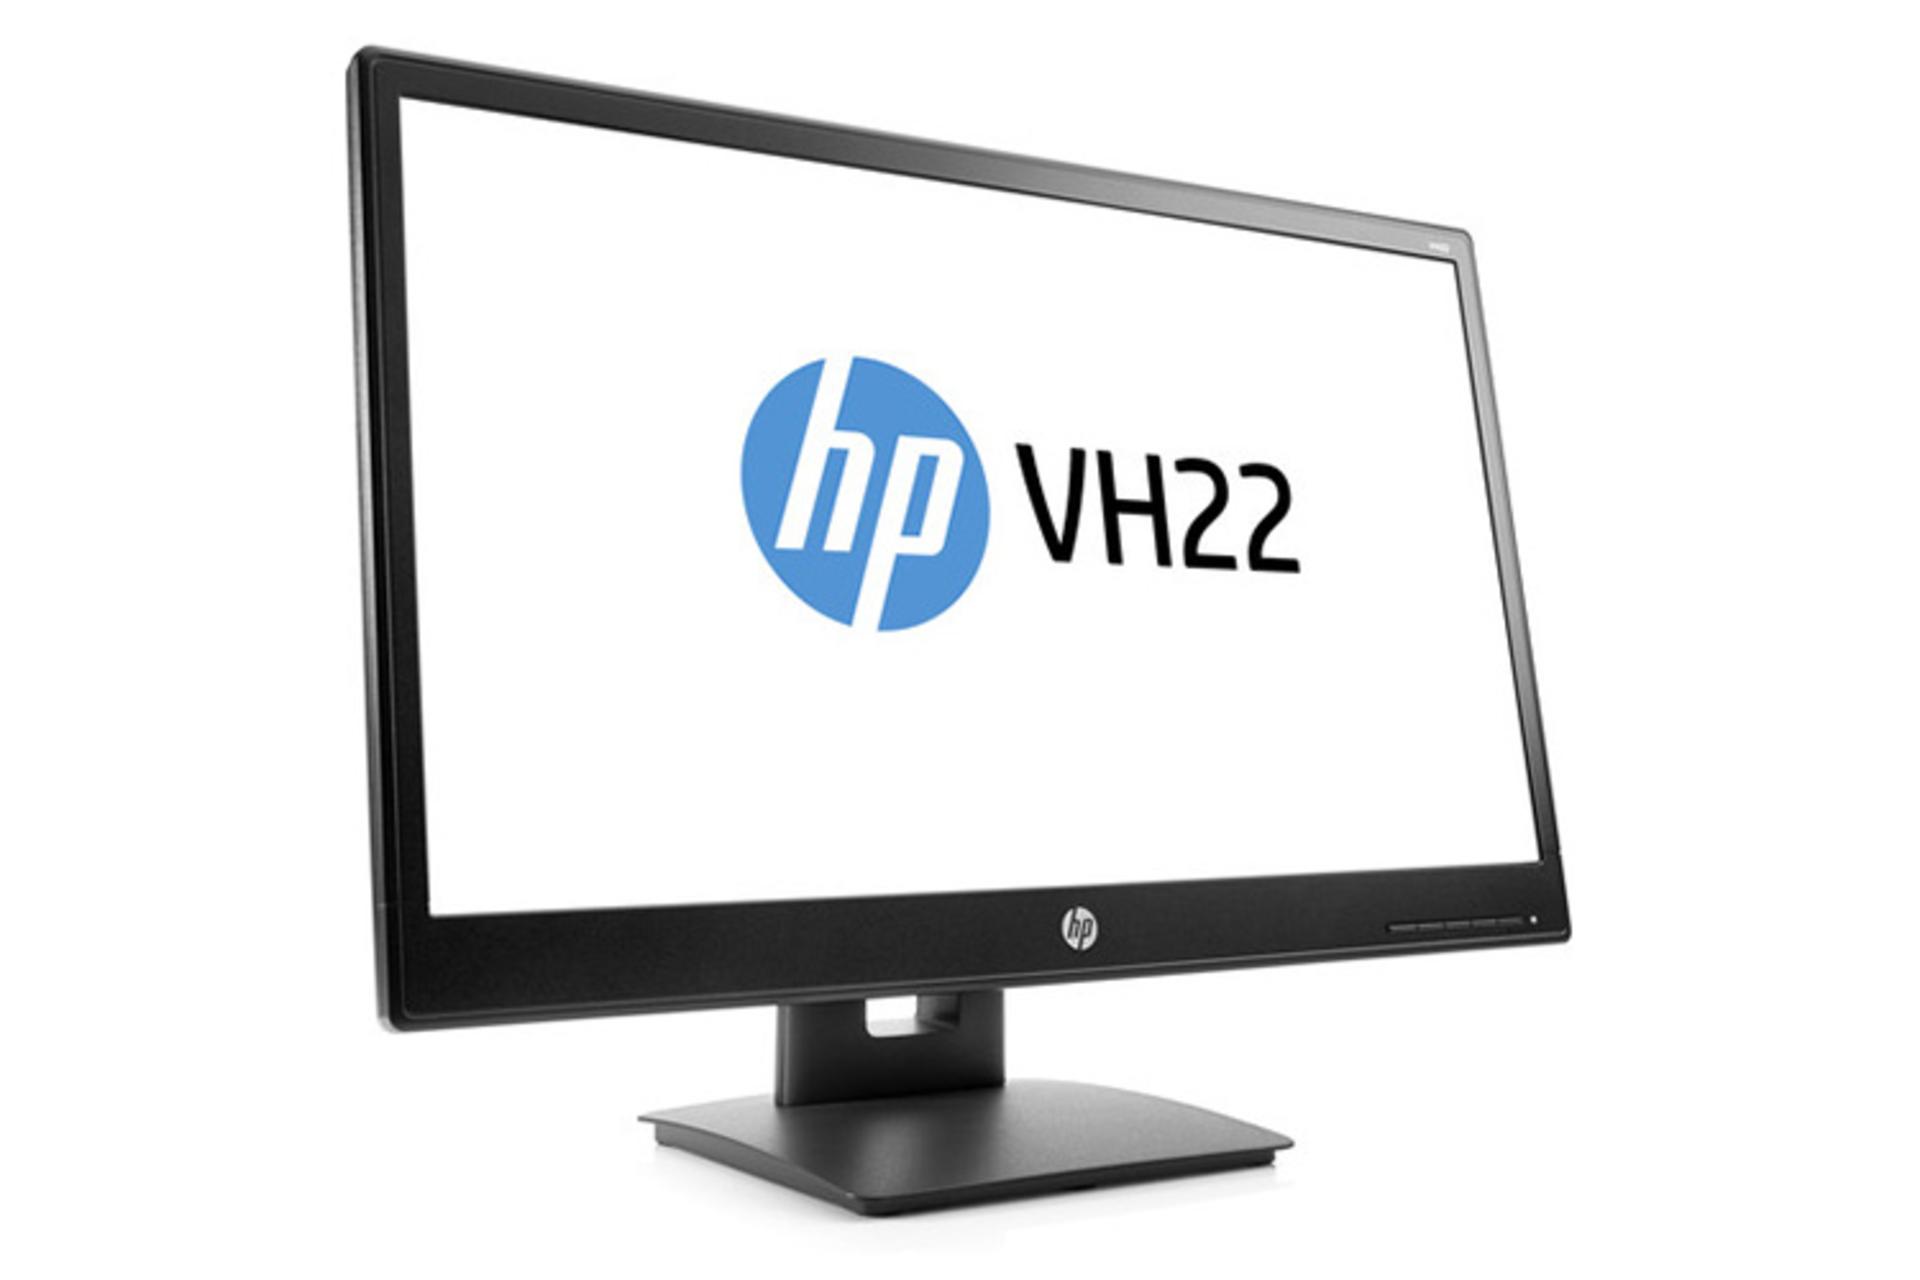 HP VH22 